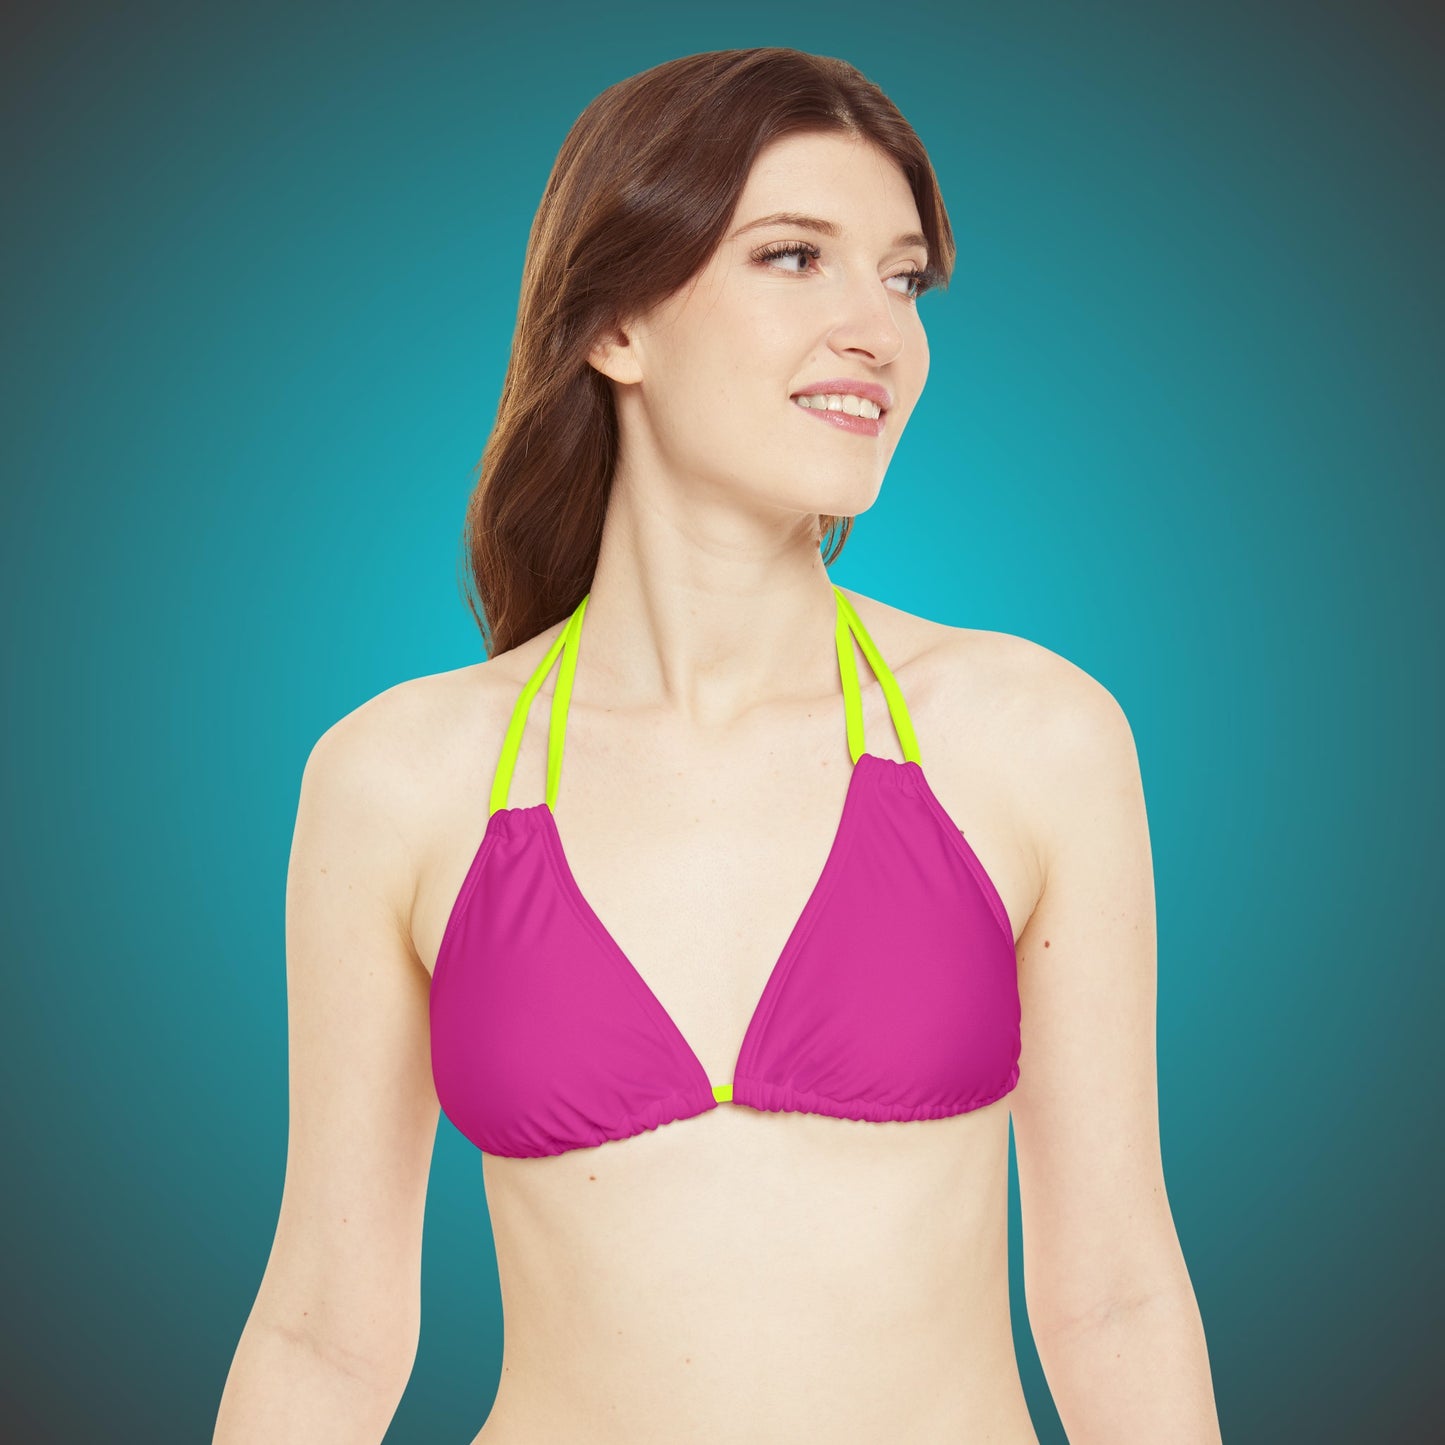 Summer Pink  Bikini Set  By HappyBuyVillage